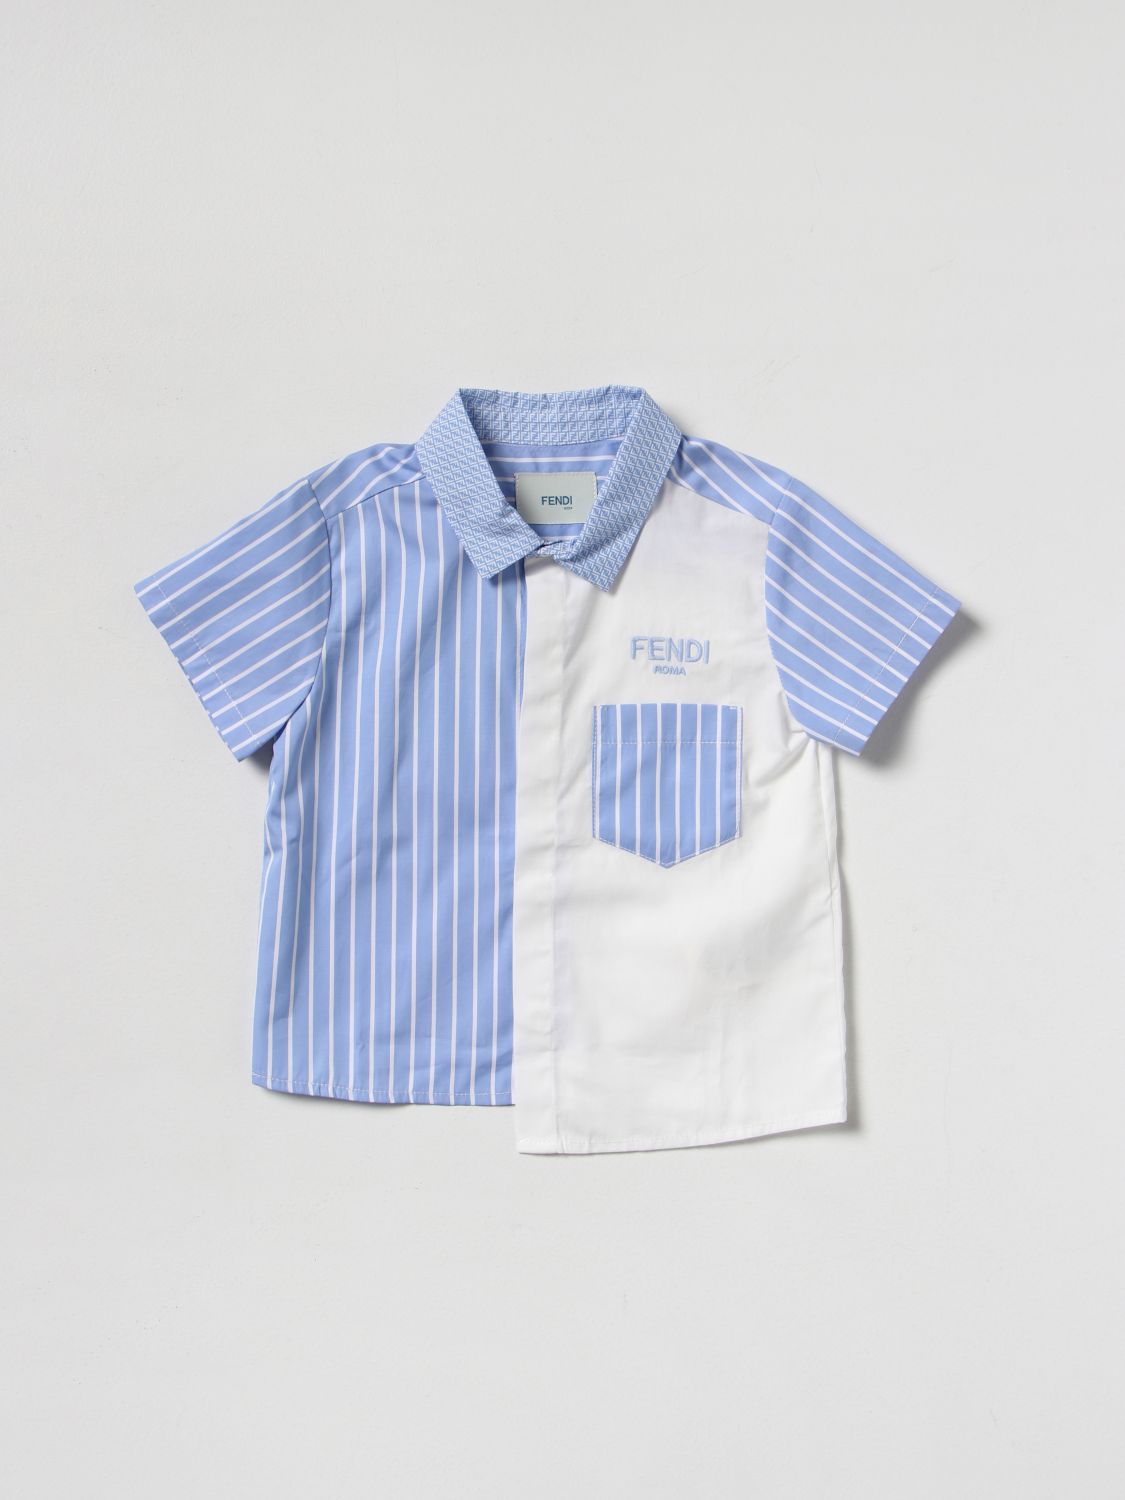 FENDI: shirt for baby - White | Fendi shirt BMC064AG37 online on GIGLIO.COM